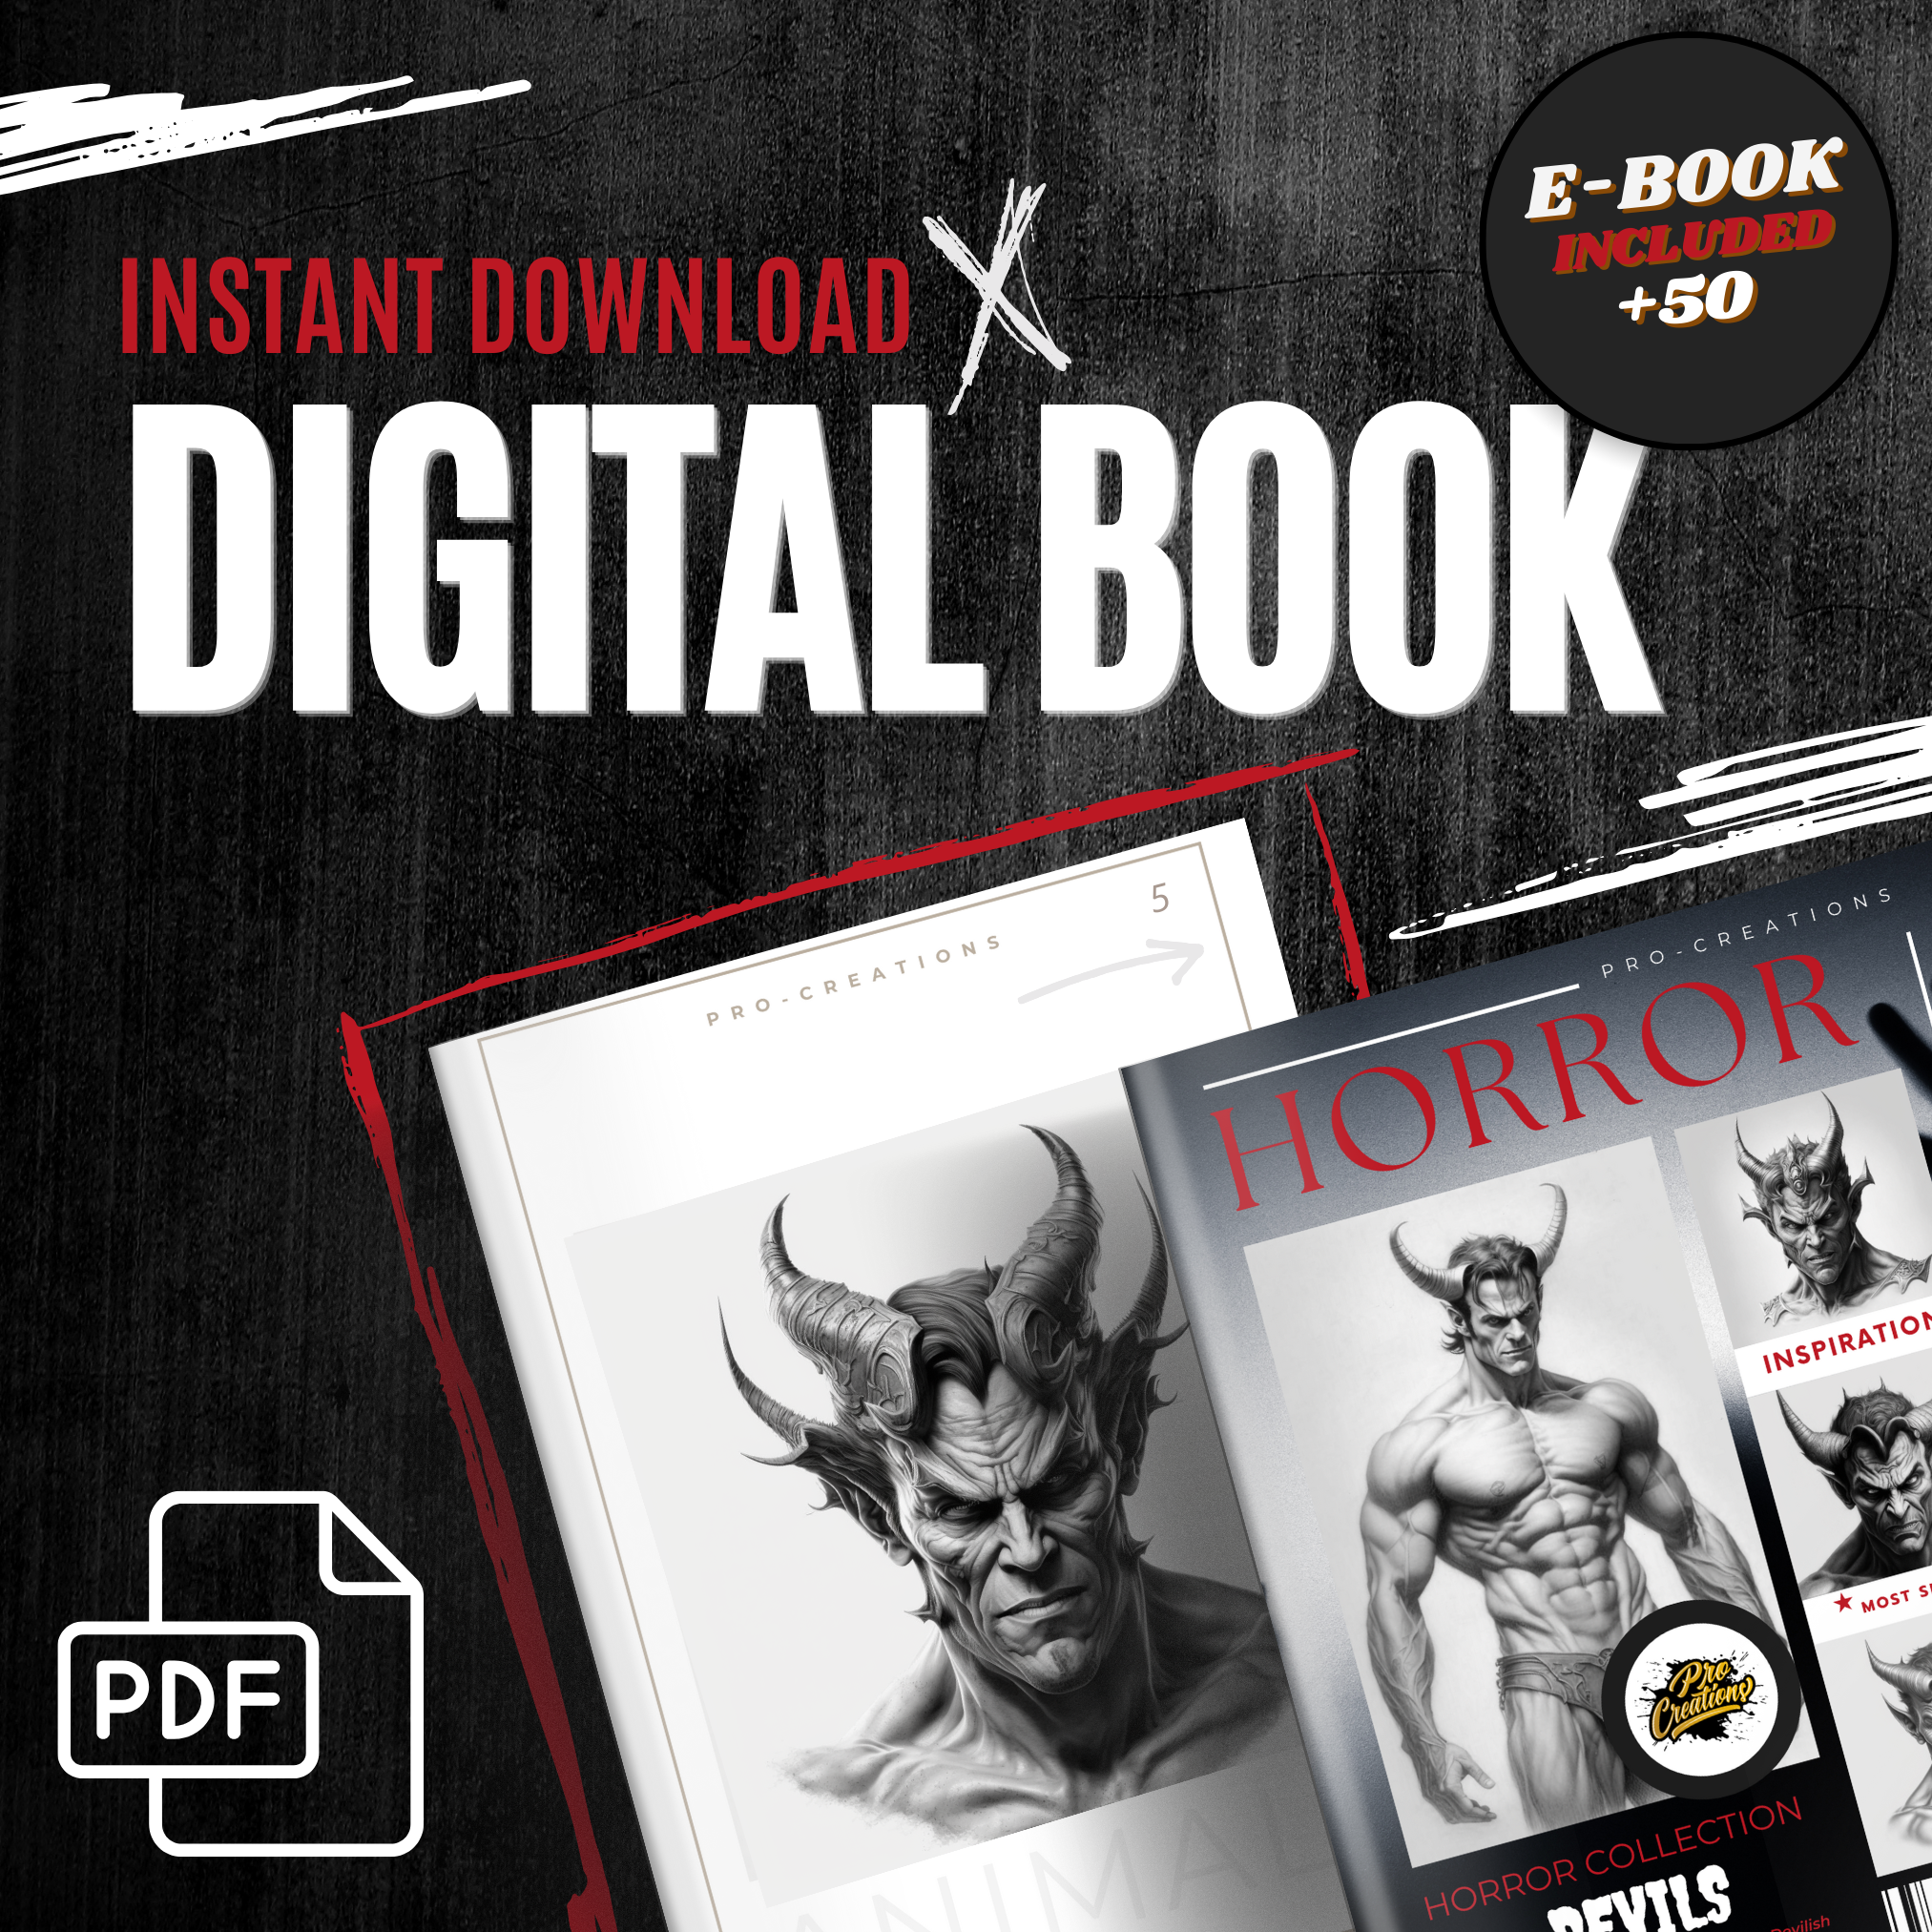 Devils Digital Horror Design Collection: 50 Procreate & Sketchbook Images